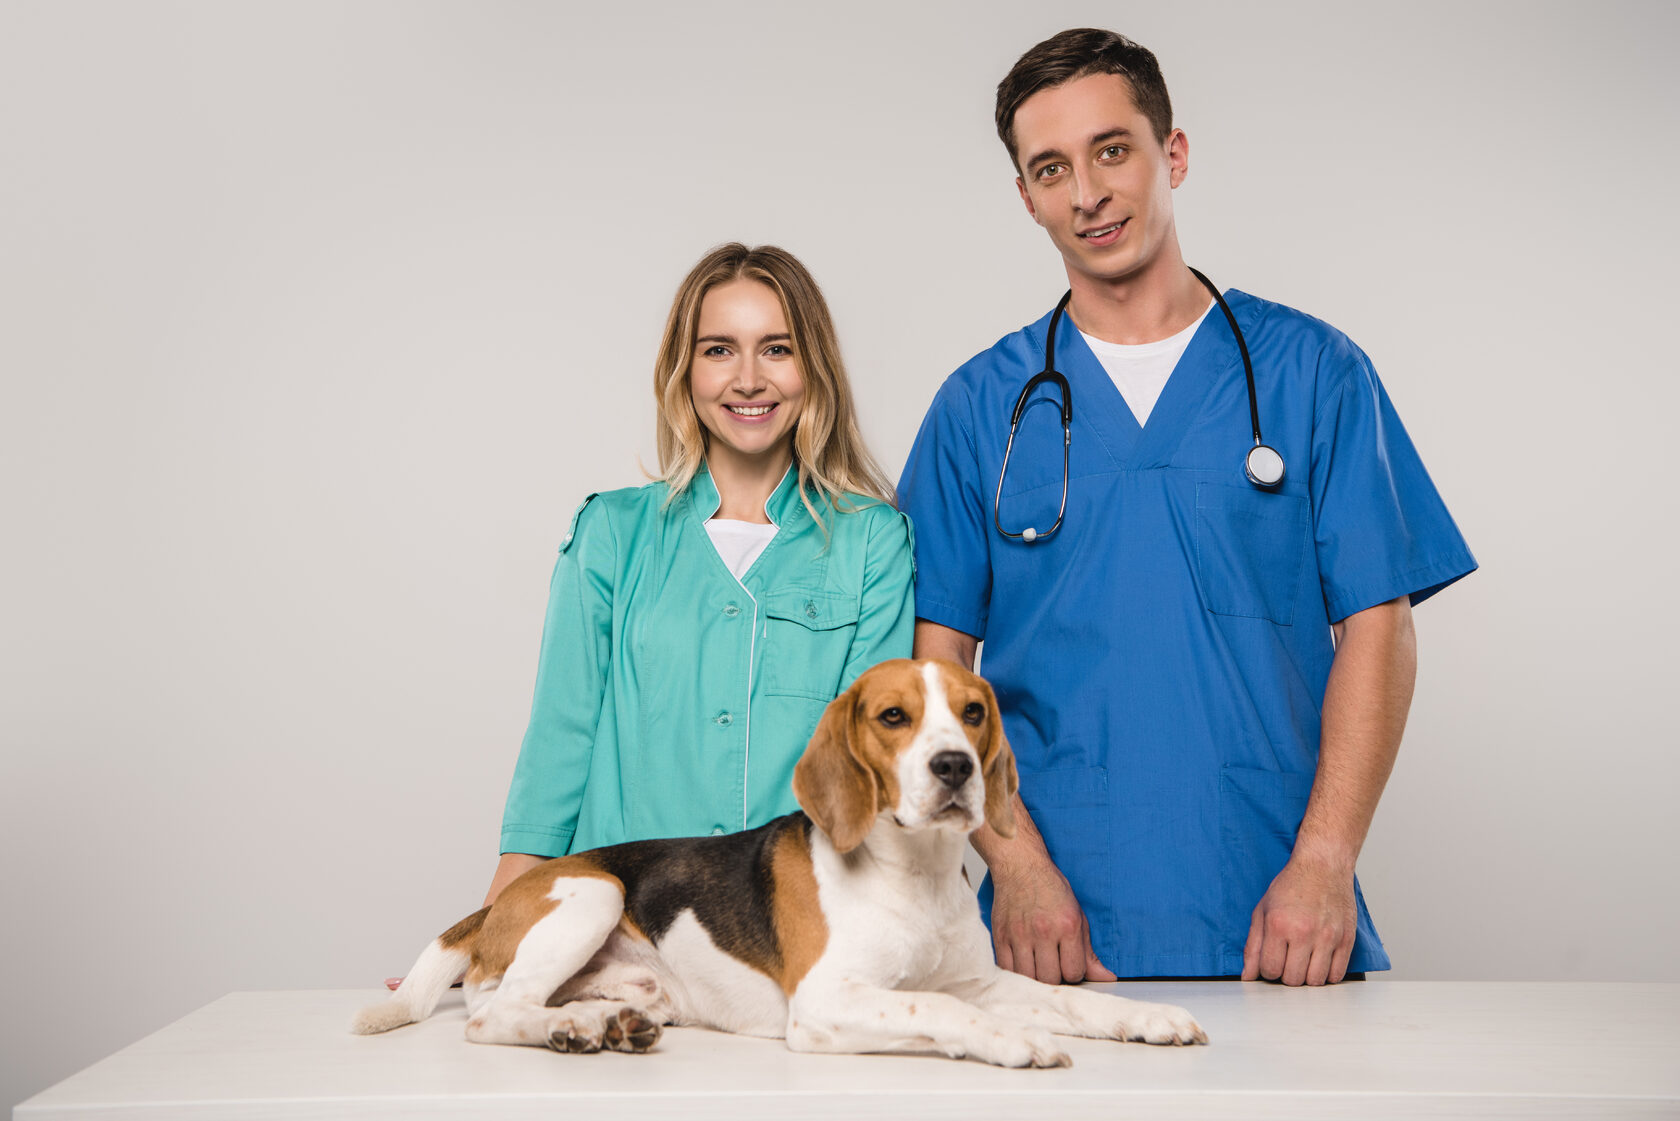 Бесплатная консультация ветеринара круглосуточно. Два ветеринара стоят над собакой. Ветеринар стоит и пишет.